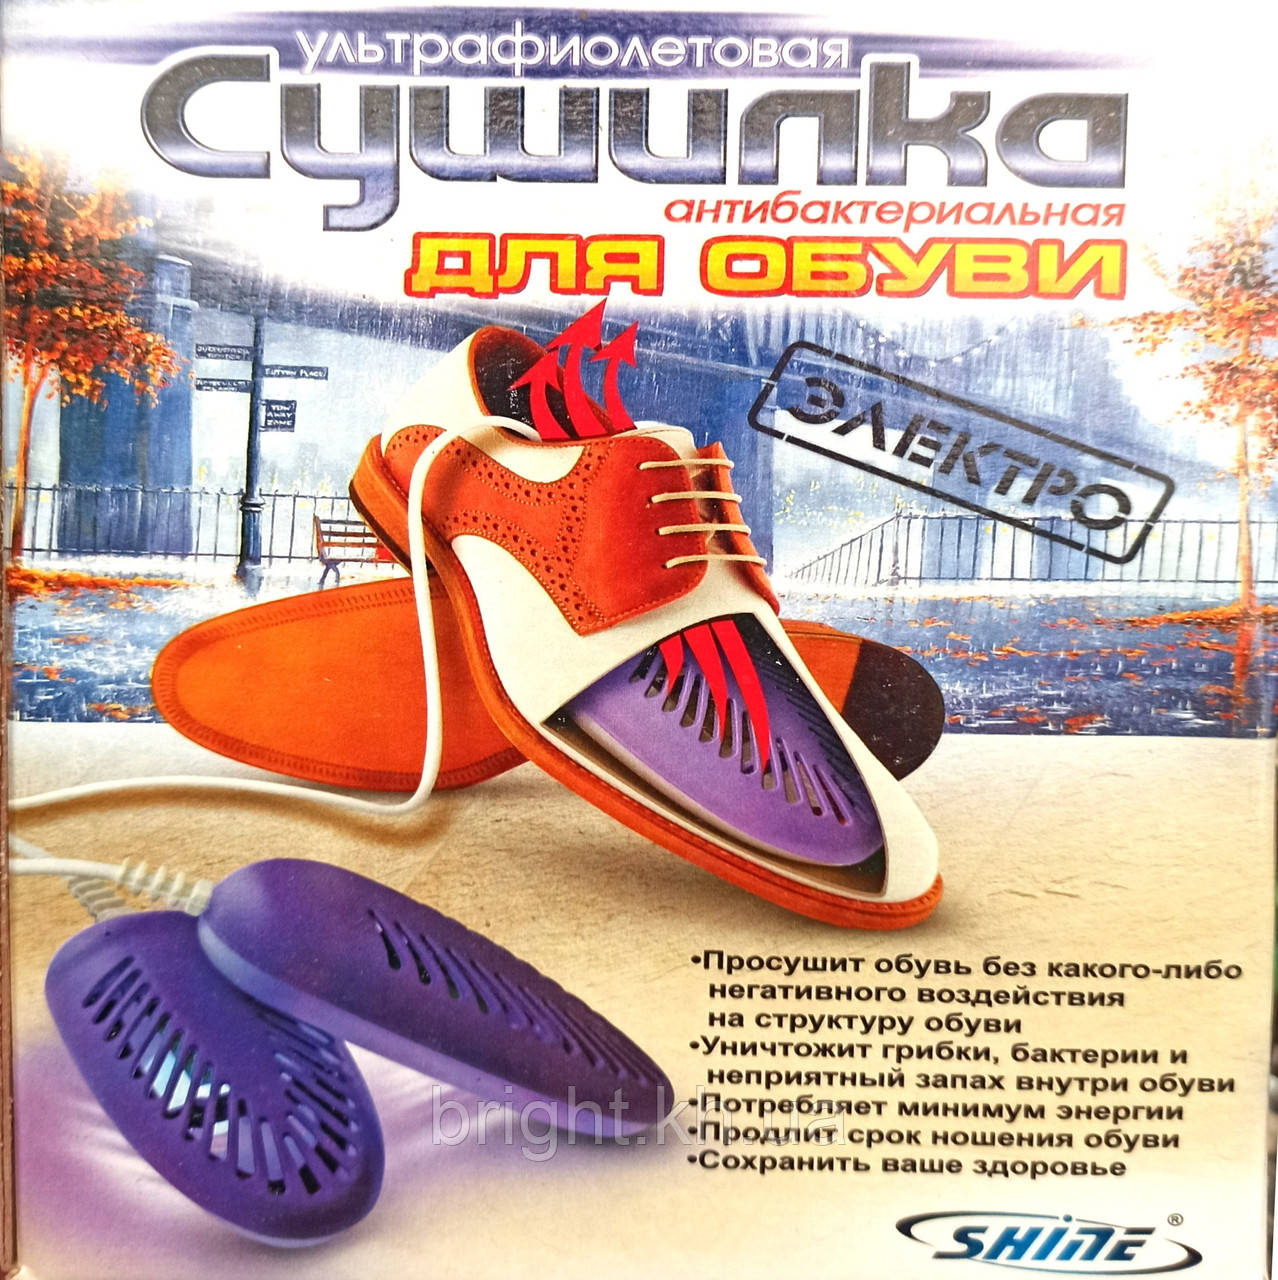 

Сушилка для обуви Shine ультрафиолетовая антибактериальная